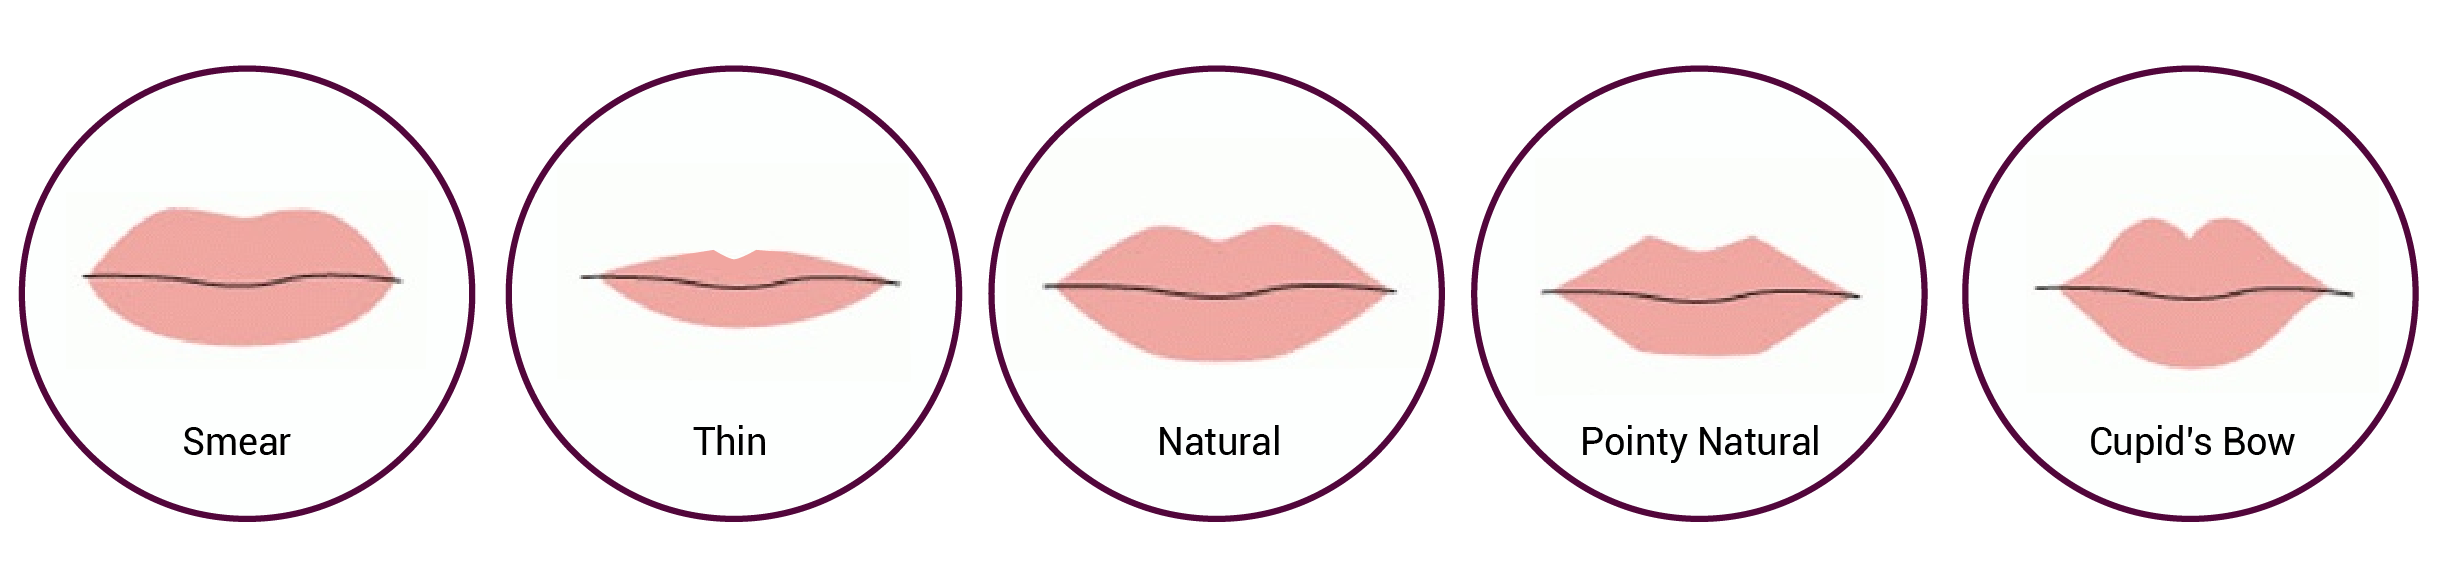 lip treatment in Mumbai